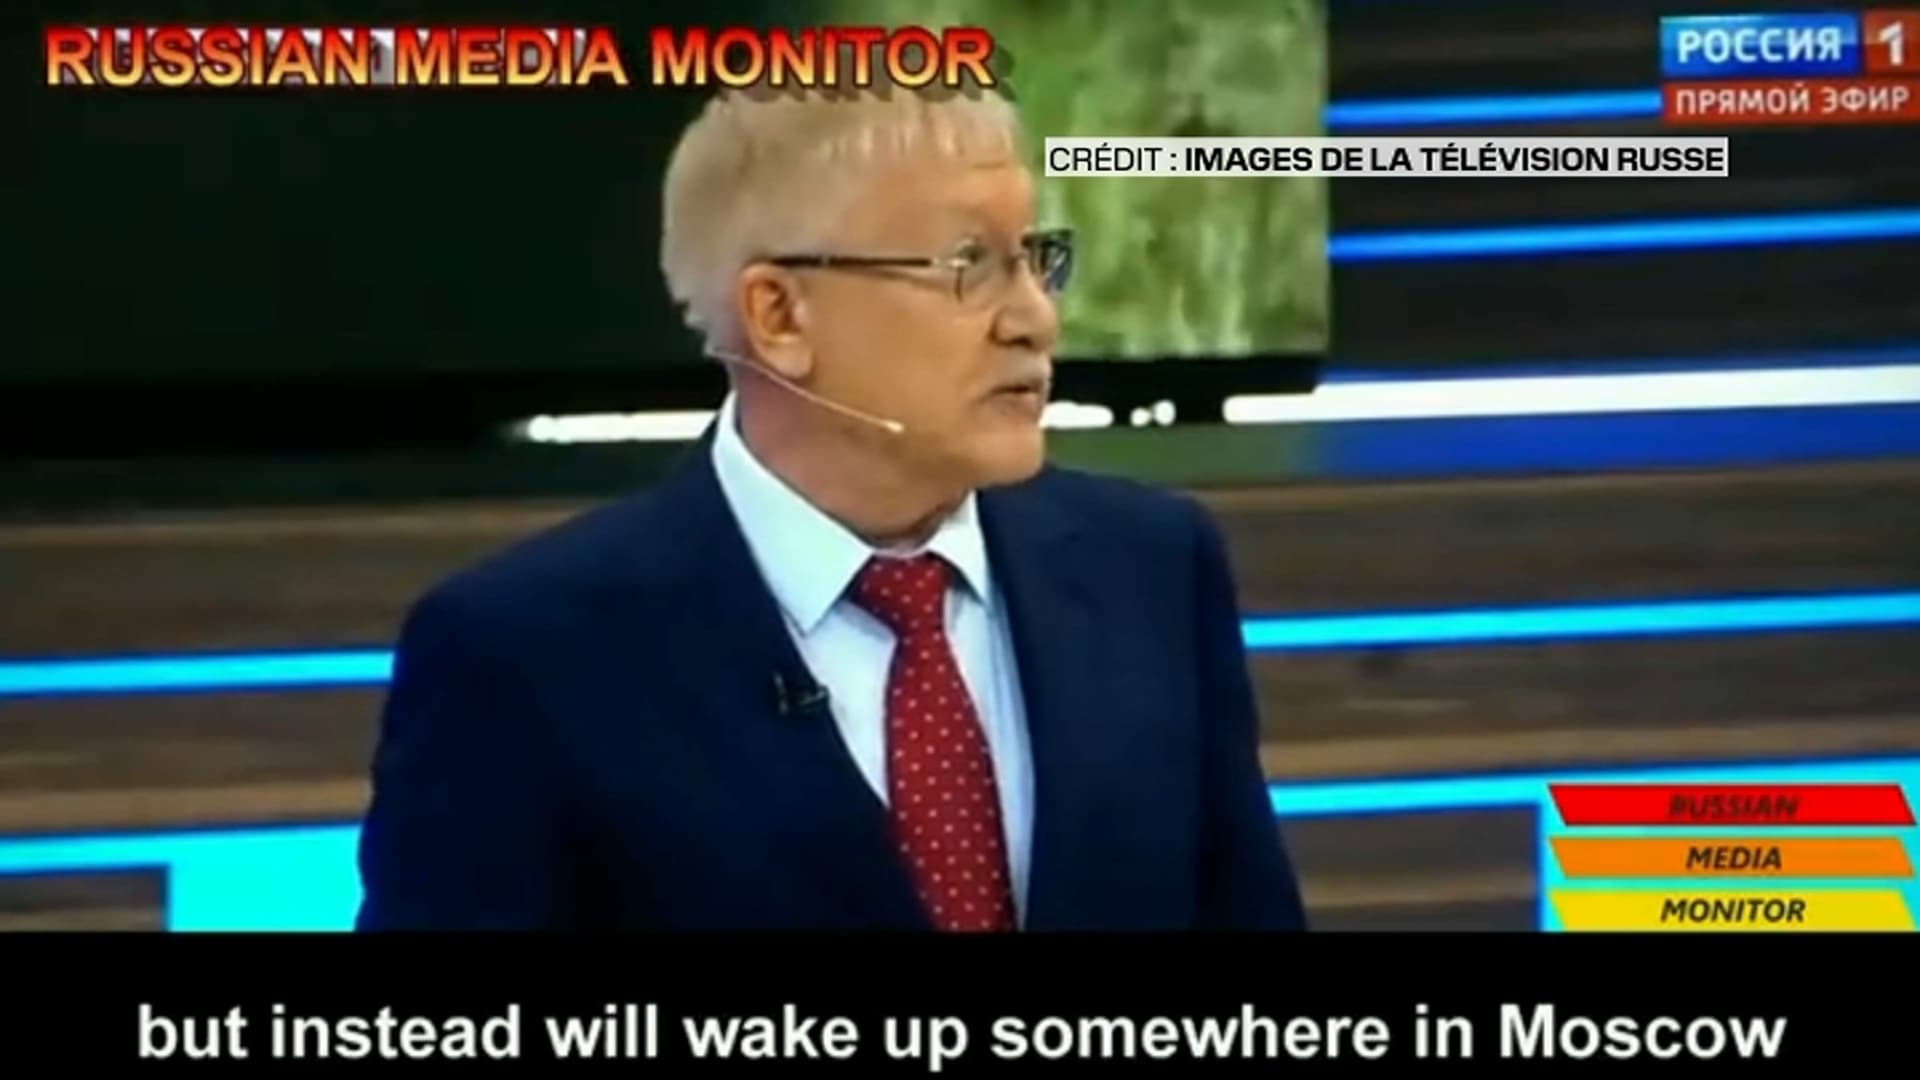 en la televisión rusa, un diputado sugiere secuestrar a oficiales occidentales que viajan a Kyiv